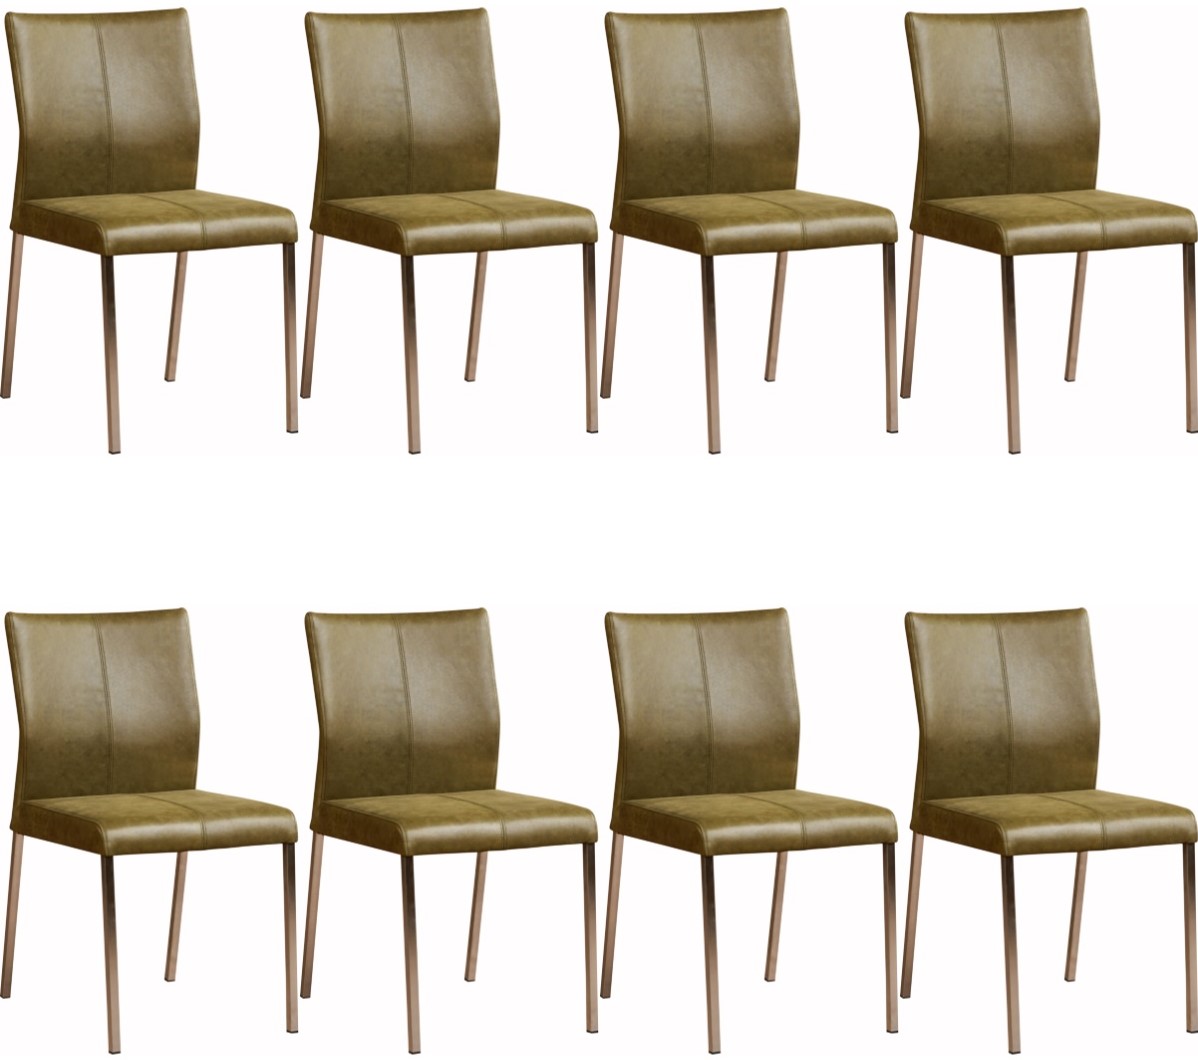 Anoi weer struik Leren eetkamerstoel Basic - set van 8 stoelen ShopX